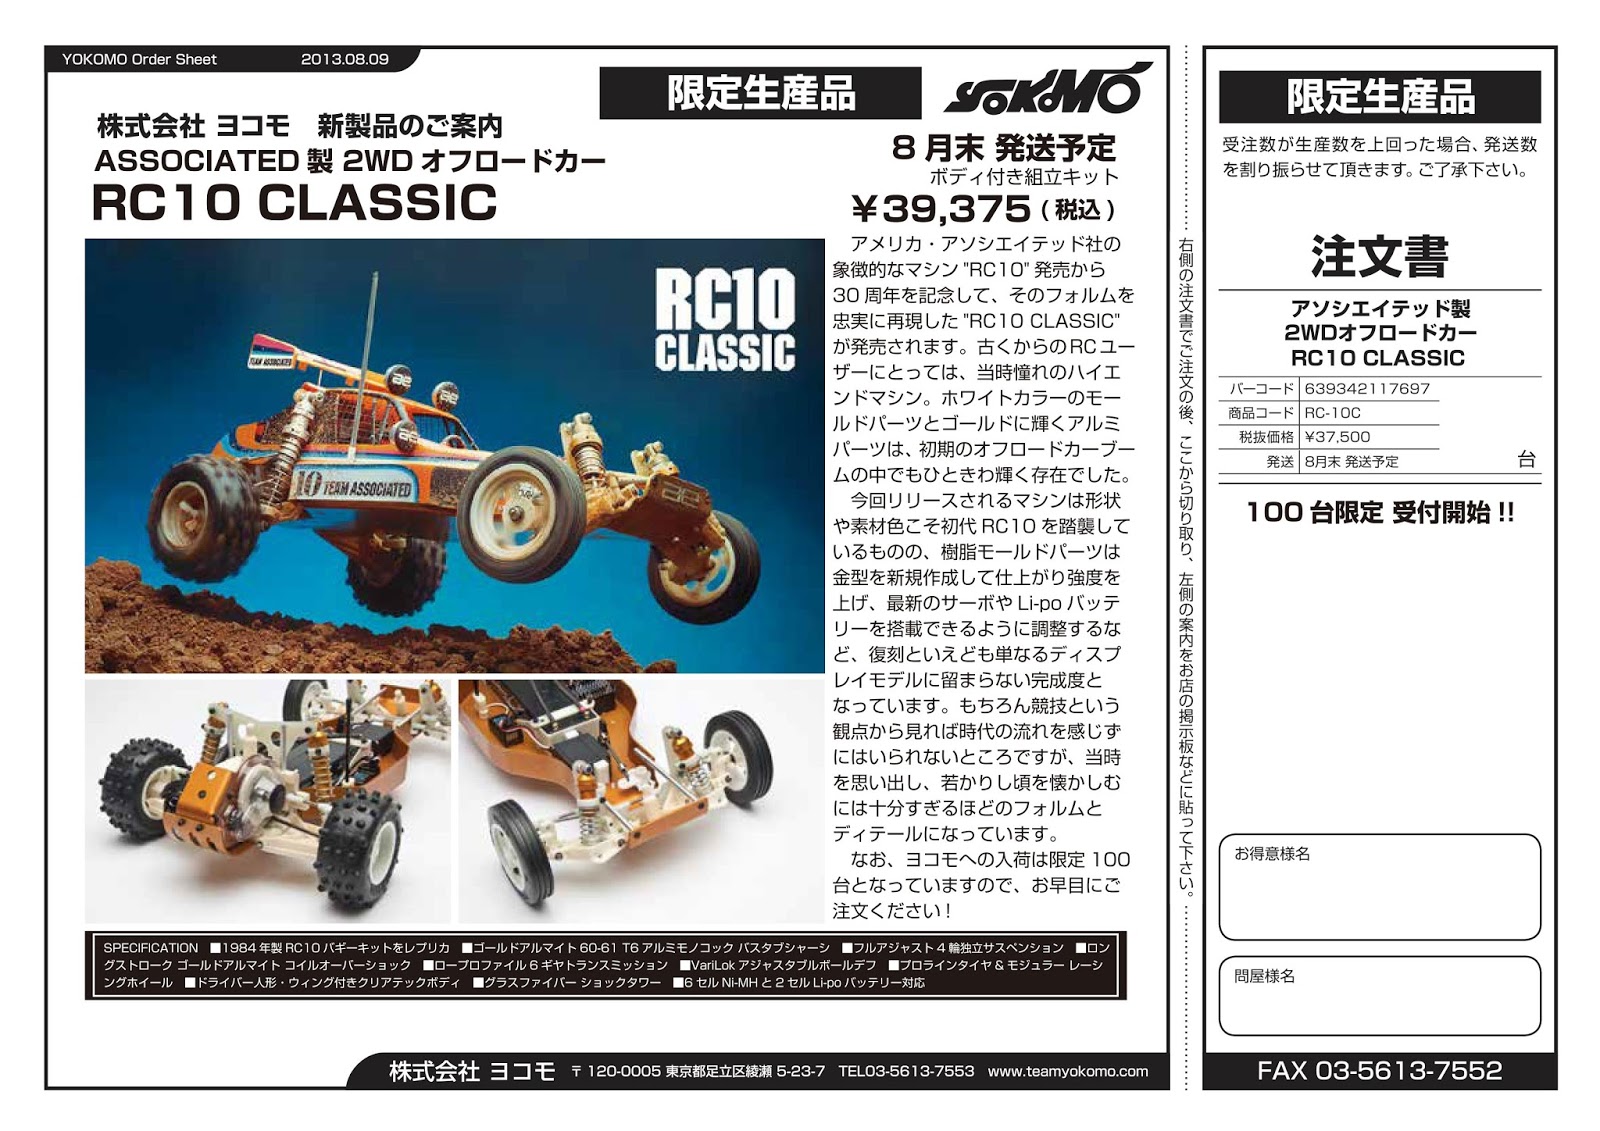 アソシ 2WDバギー「RC10 CLASSIC」が8月末発売|ラジコンもんちぃ